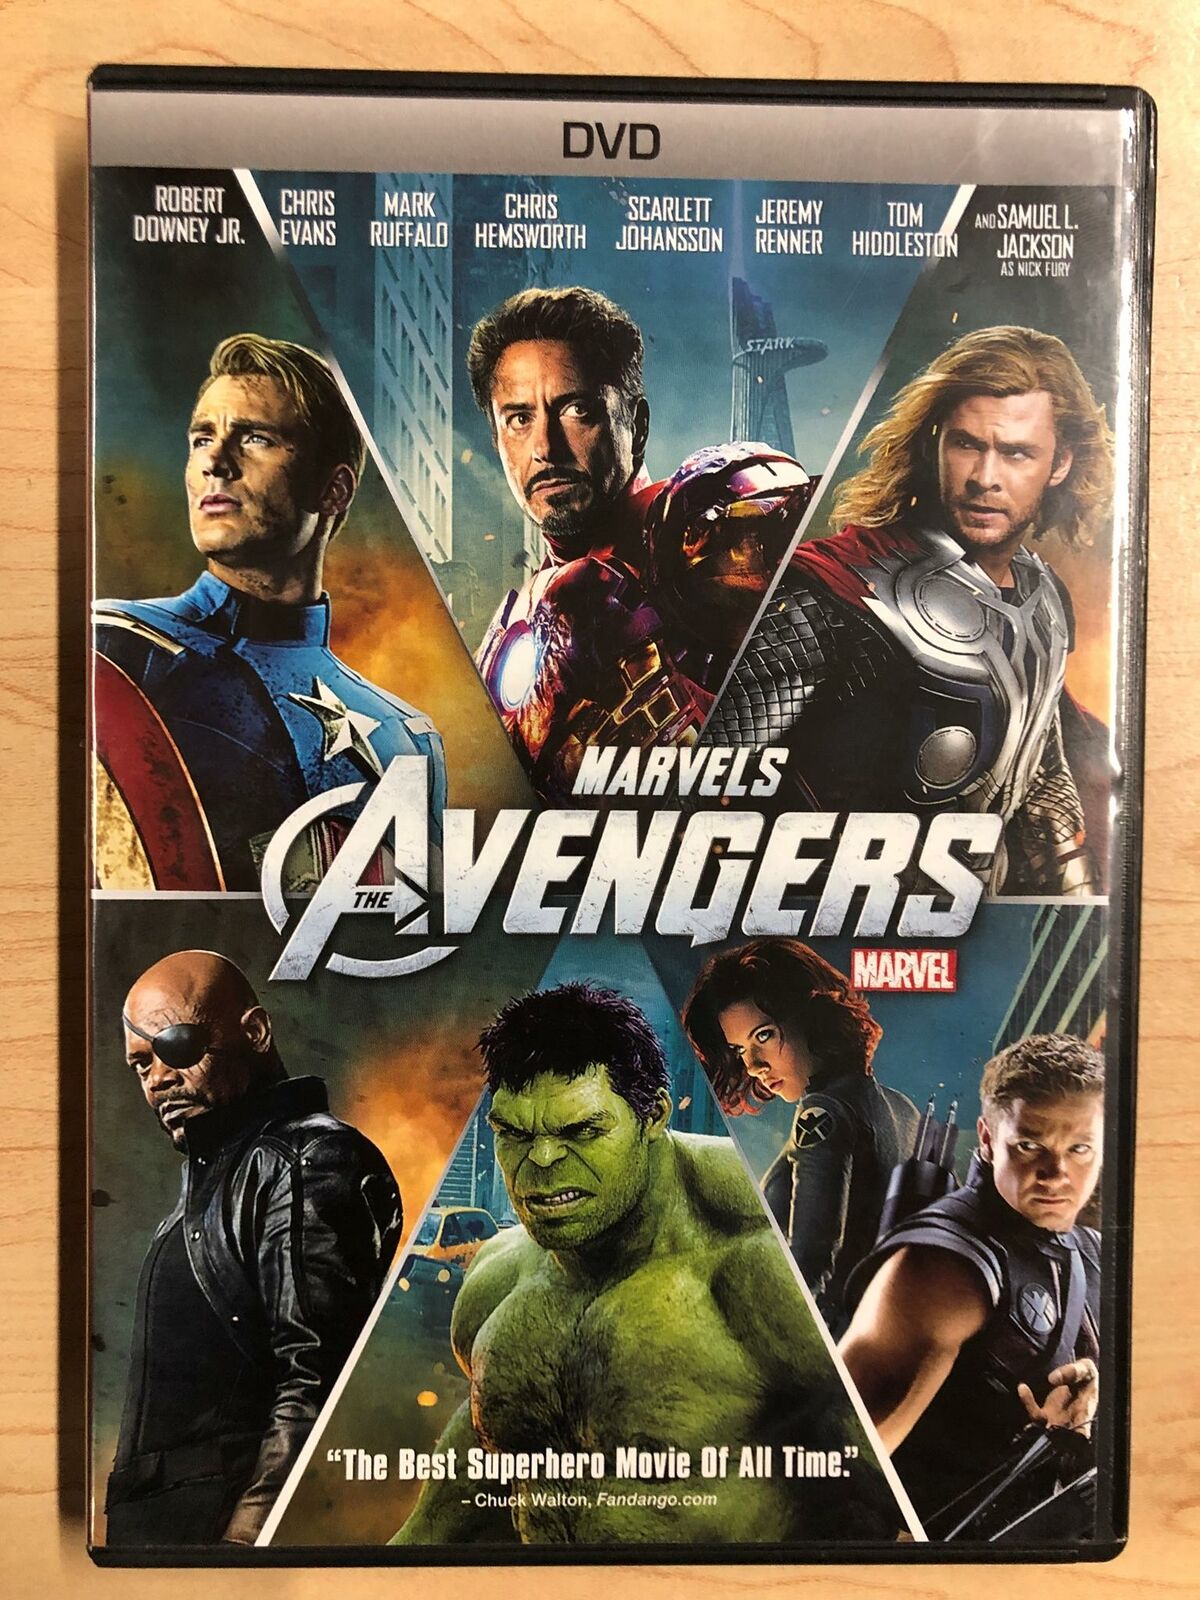 The Avengers (DVD, 2012, Marvel) - J1231